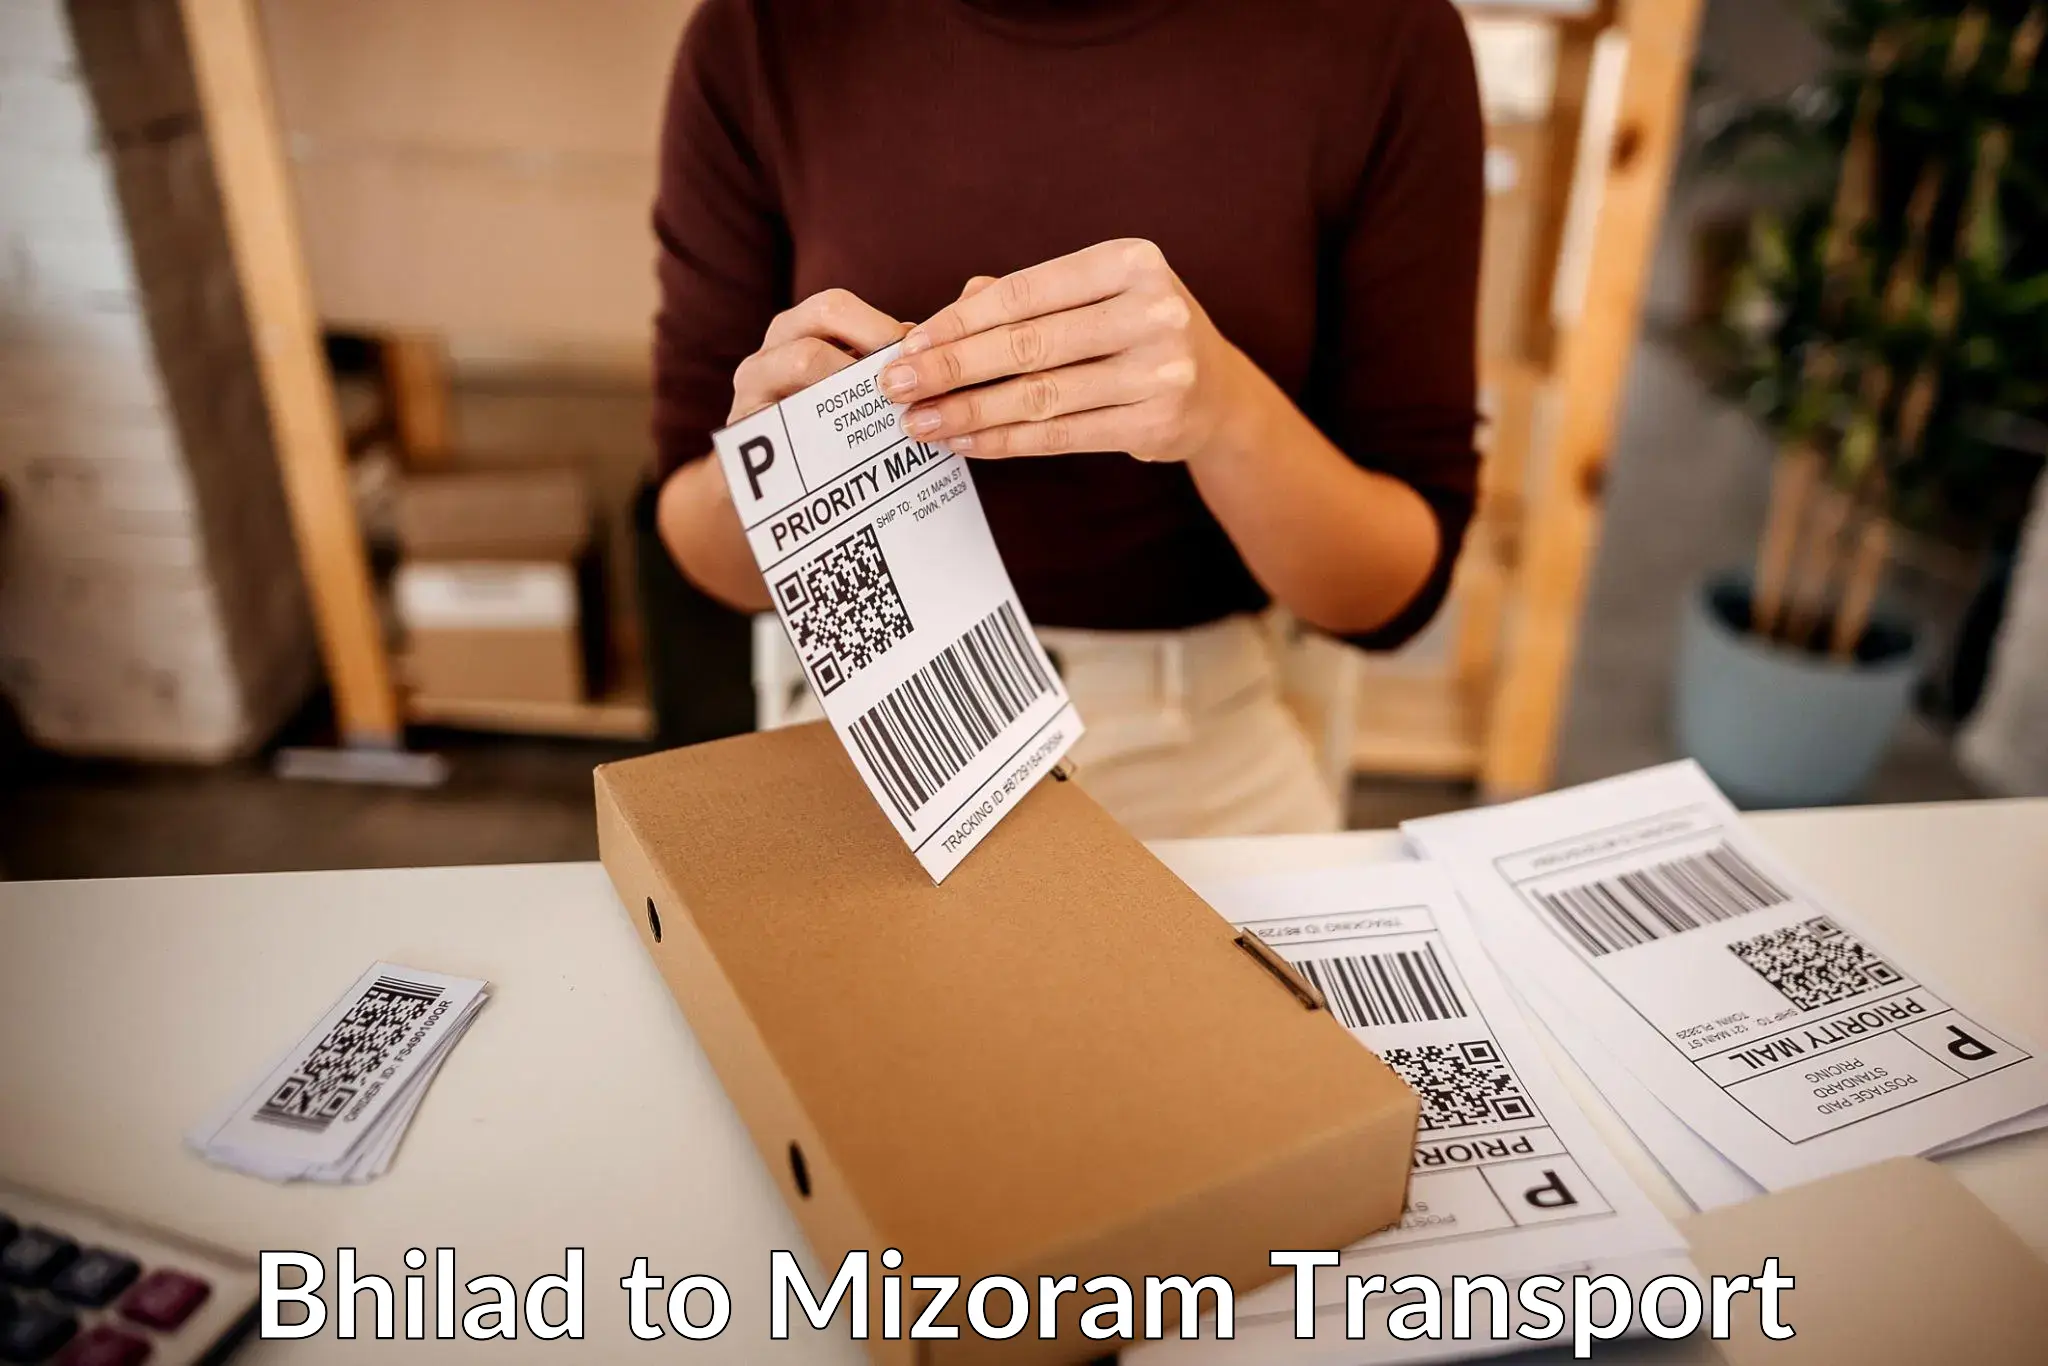 Container transport service Bhilad to Mizoram